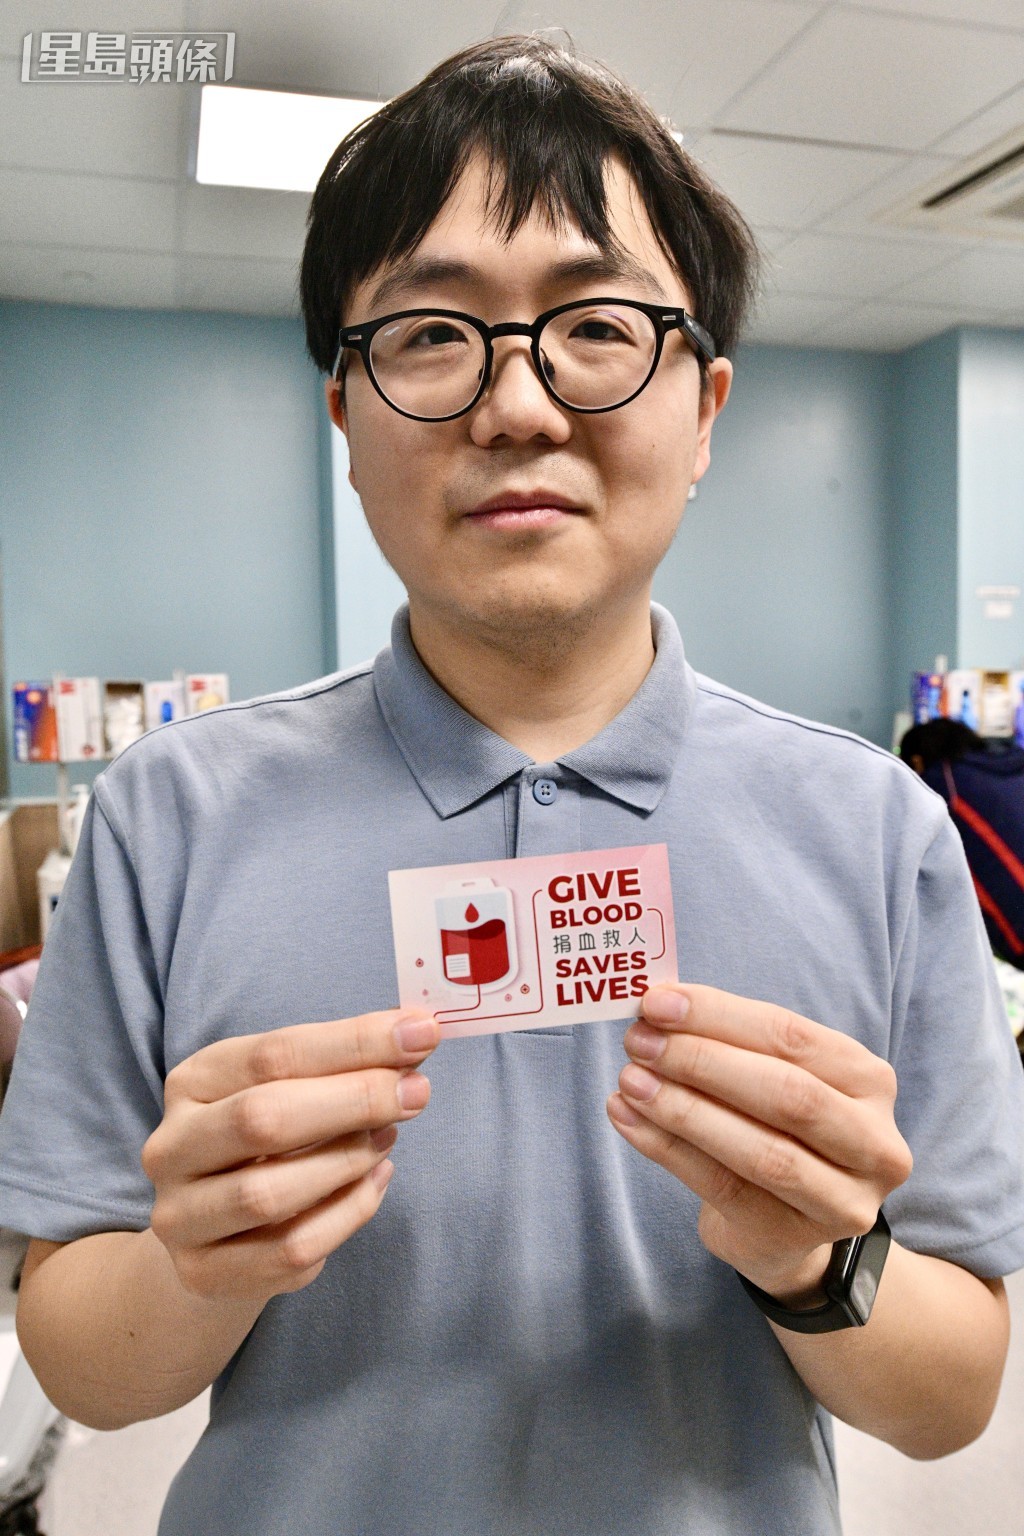 竺先生指今次捐血是希望奉献爱心，为这个城市贡献自己的一点力量。卢江球摄